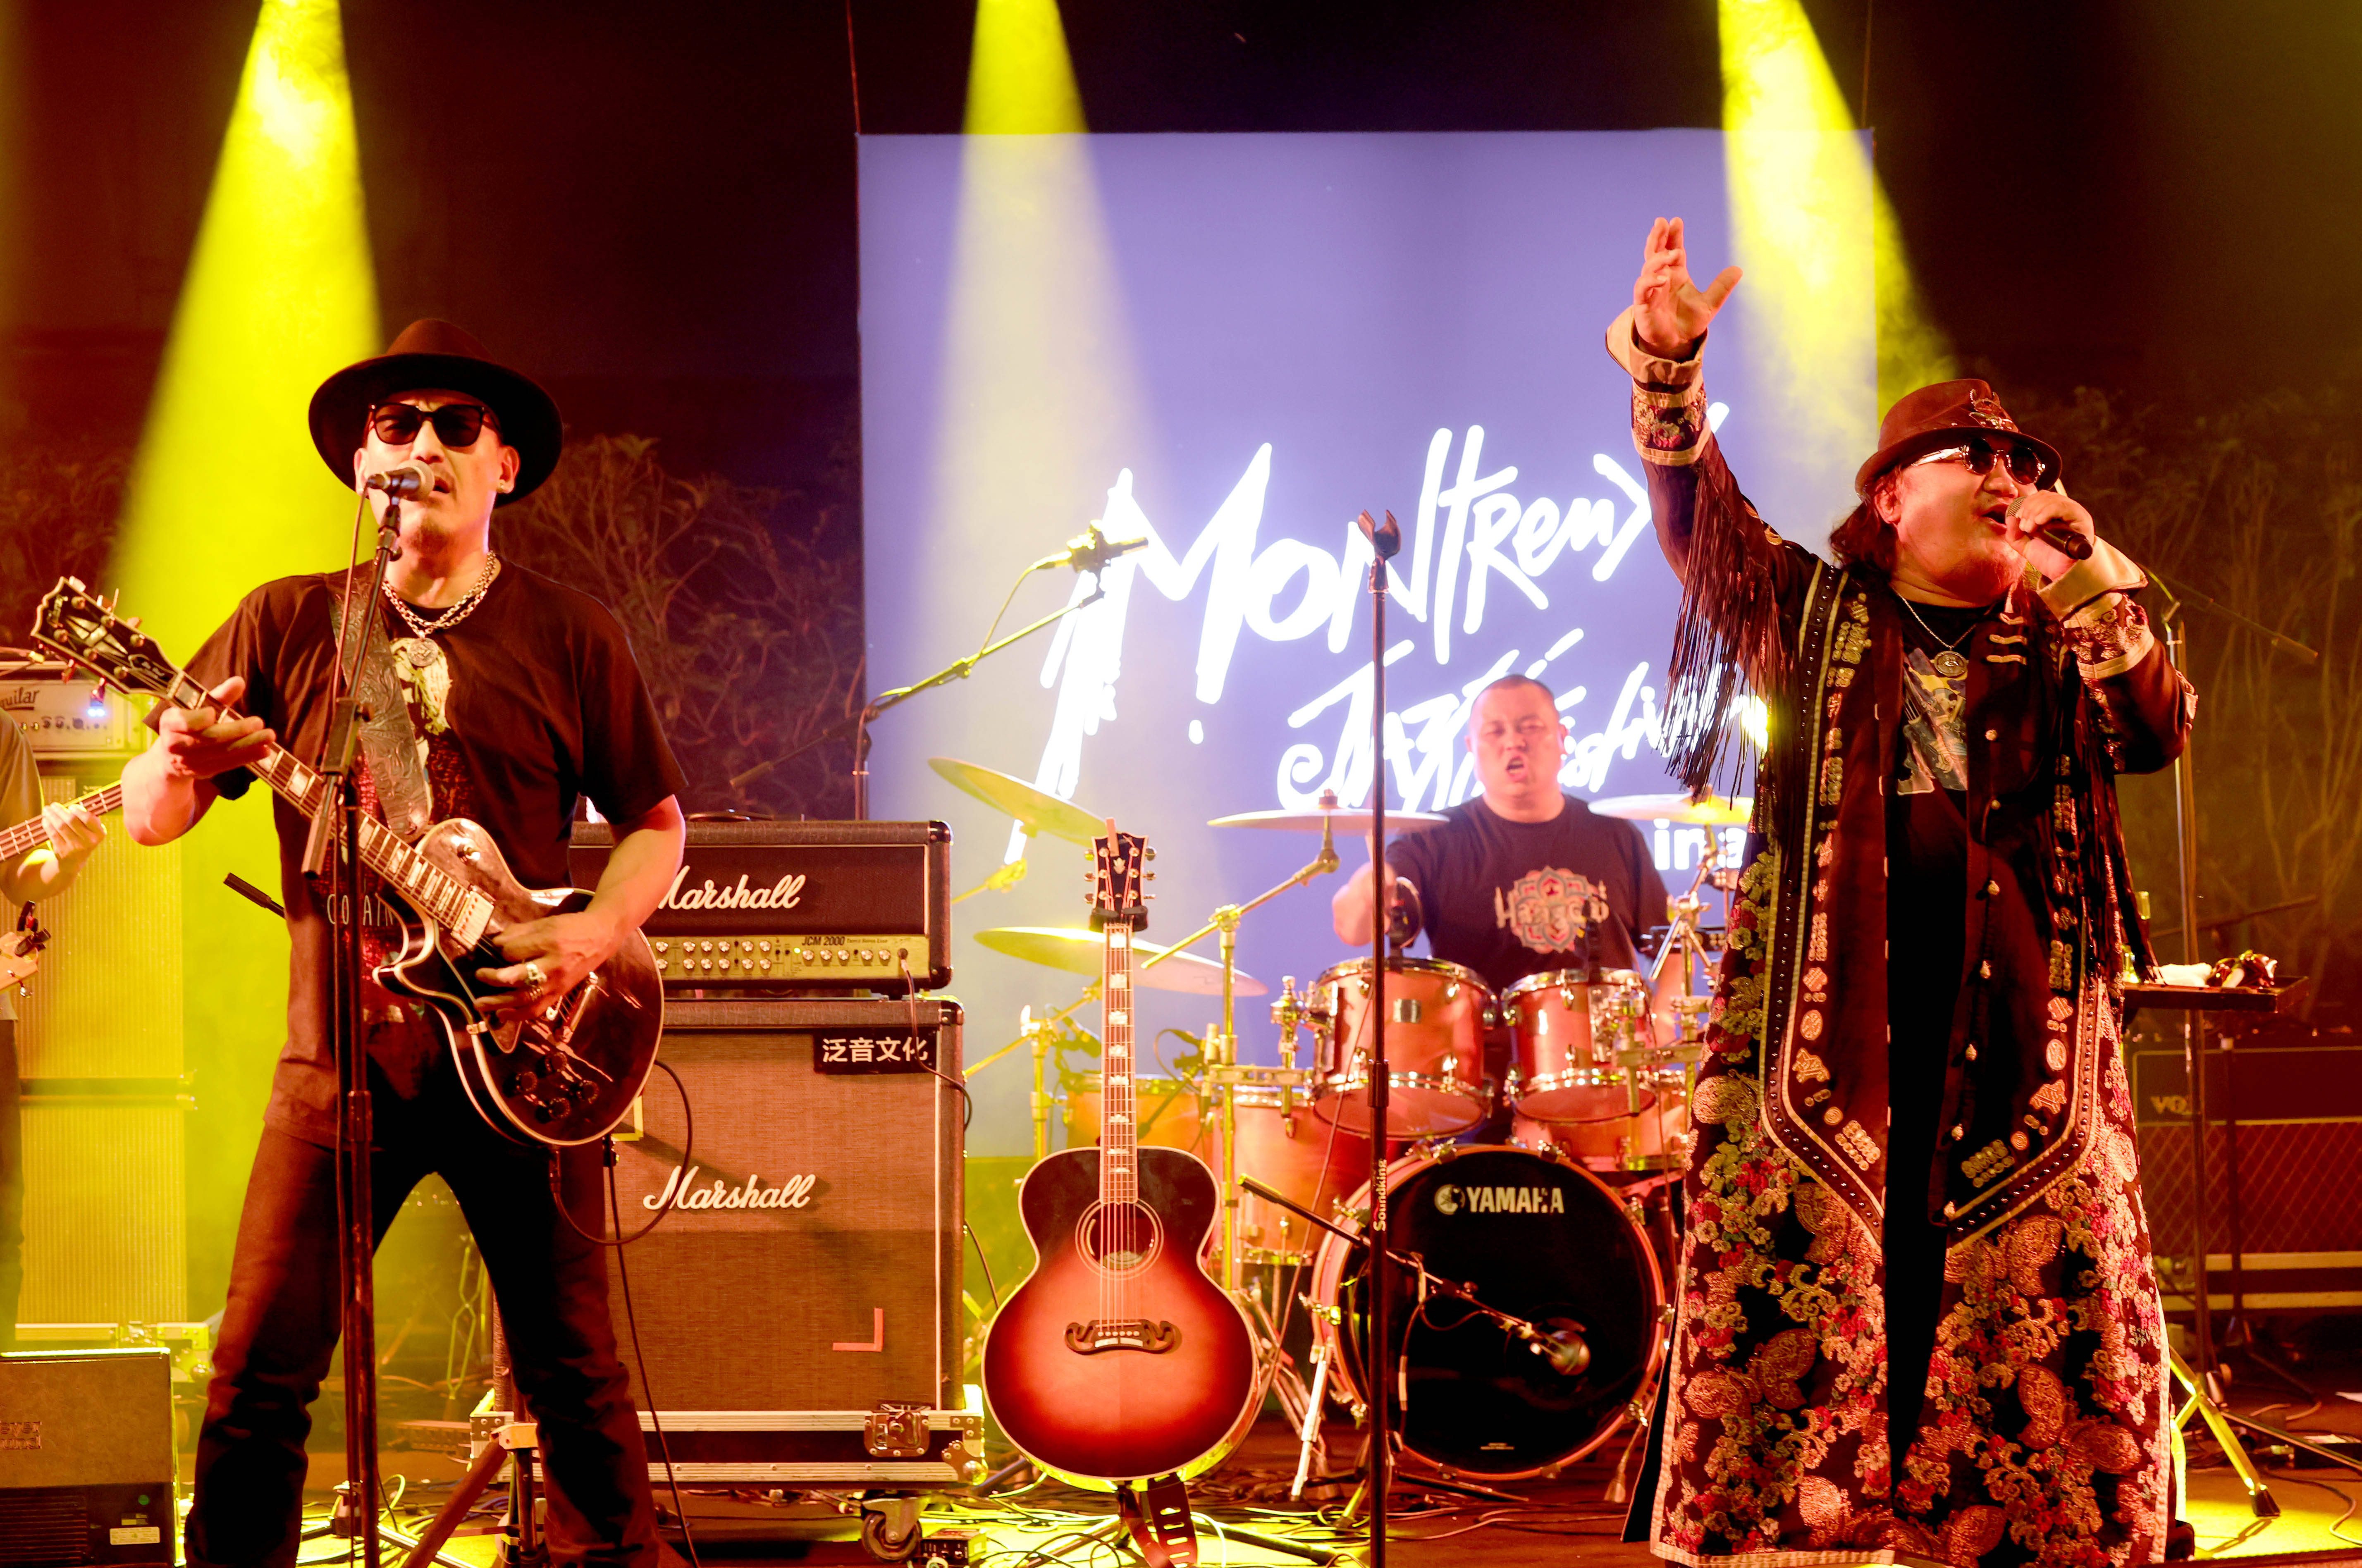 10月6日,内蒙古摇滚乐队杭盖乐队在蒙特勒(中国)爵士音乐节上演奏